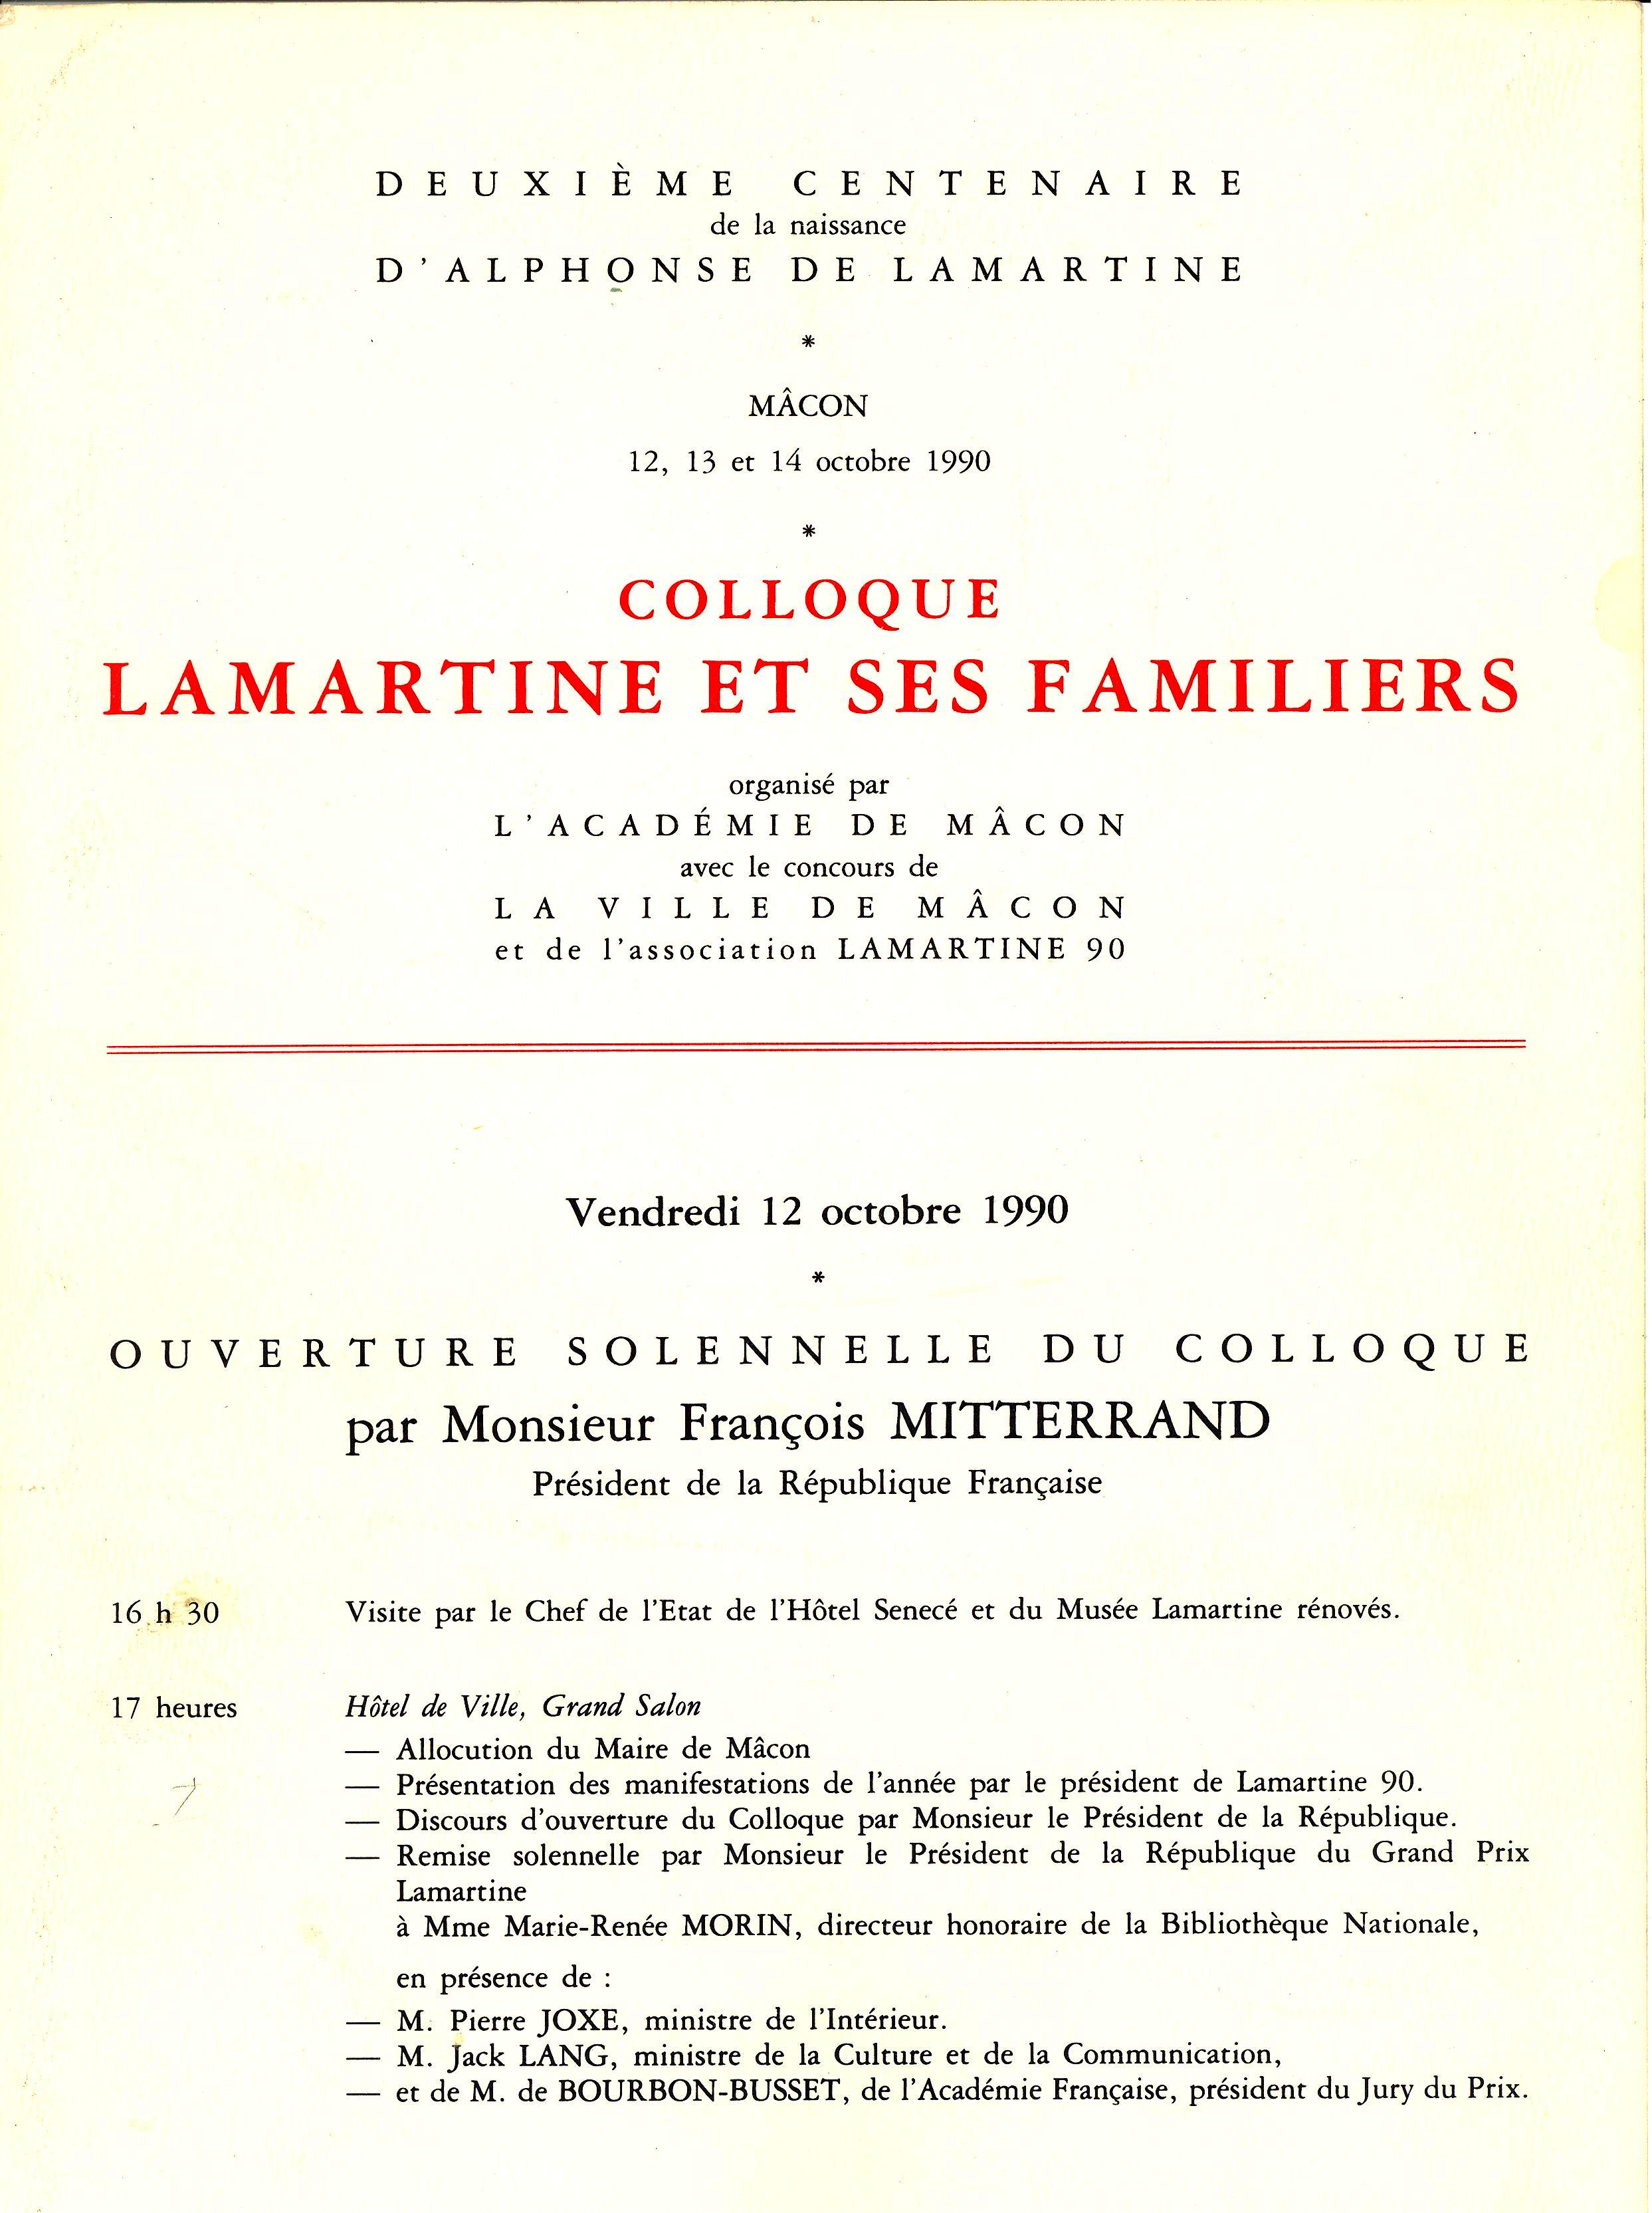 Lamartine et ses familiers